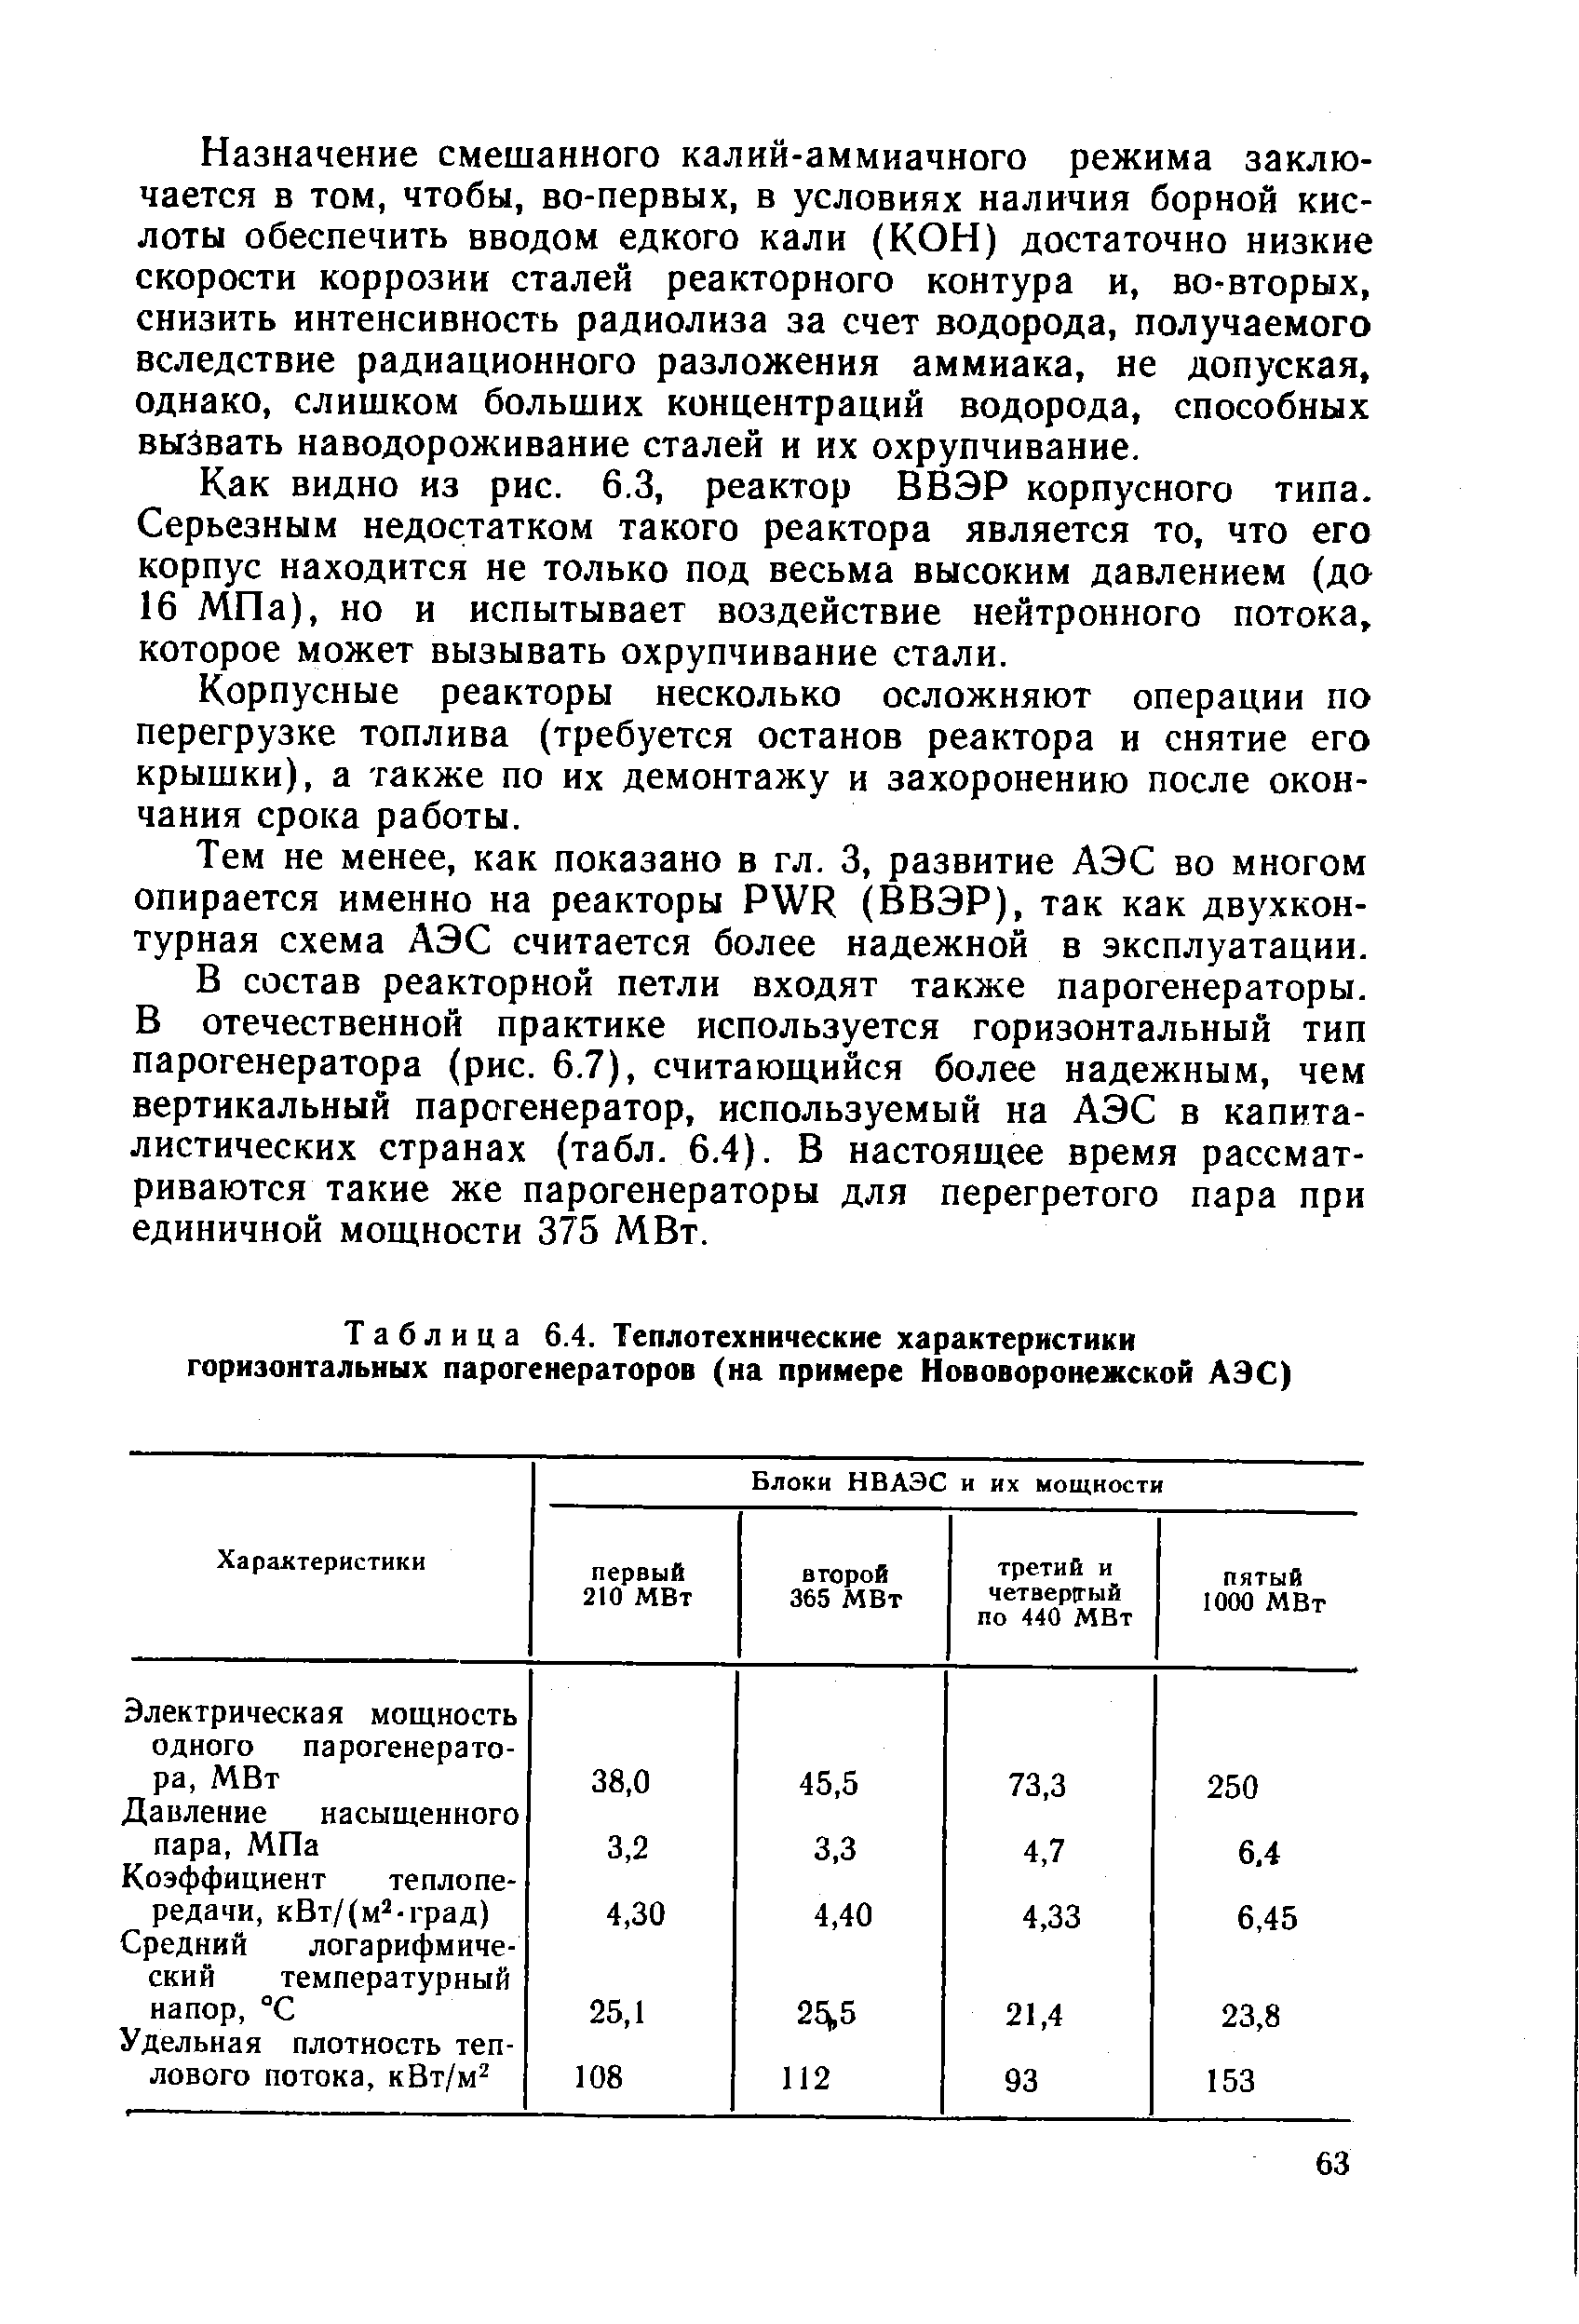 Таблица 6.4. Теплотехнические характеристики горизонтальных парогенераторов (на примере Нововоронежской АЭС)
